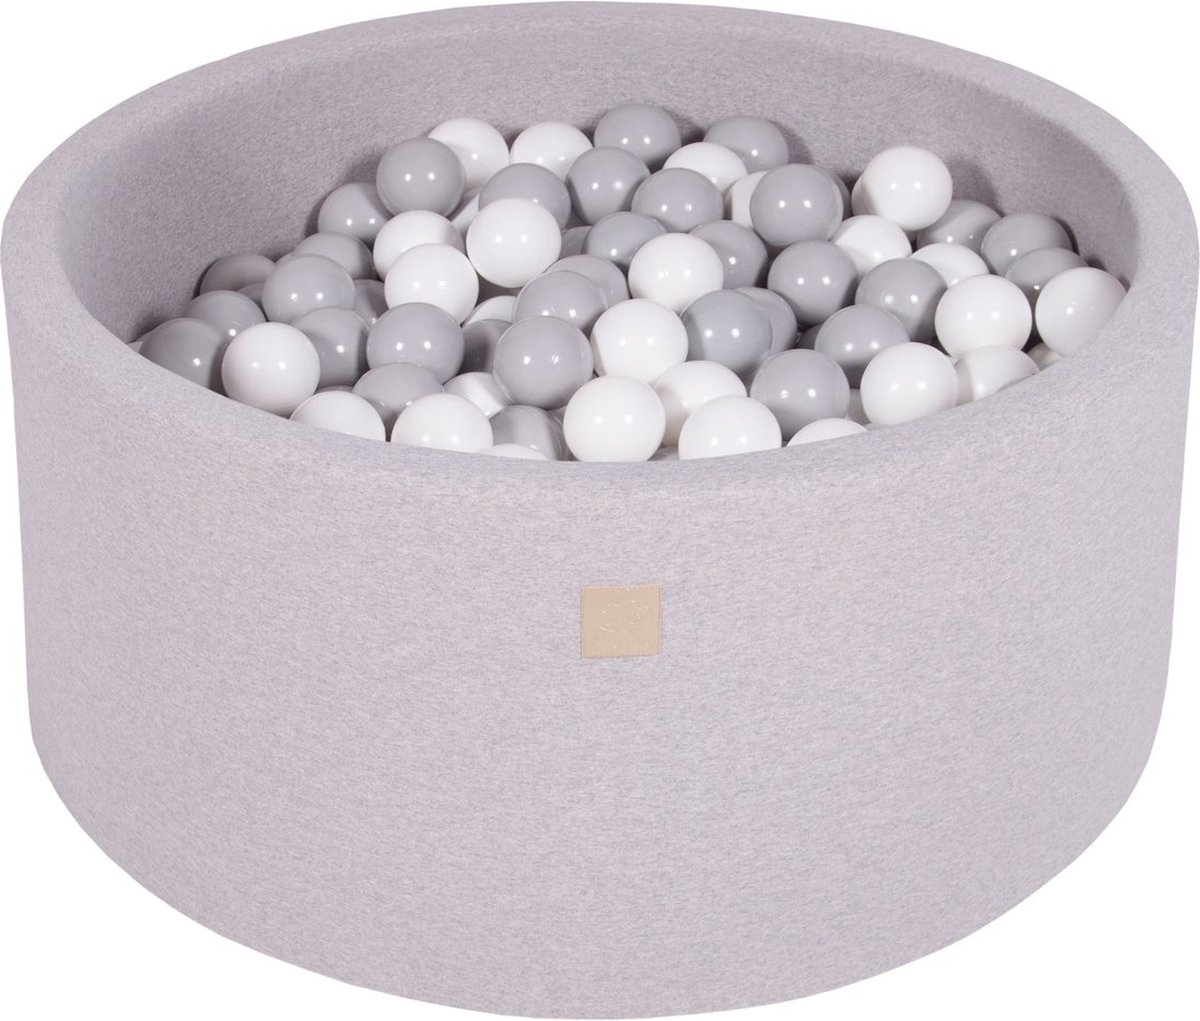 MeowBaby® Piscine Balles Pour Bébé Rond 90x30cm/200 Balles 7cm Fabriqué En  UE, Coton, Gris Clair: Blanc/Gris